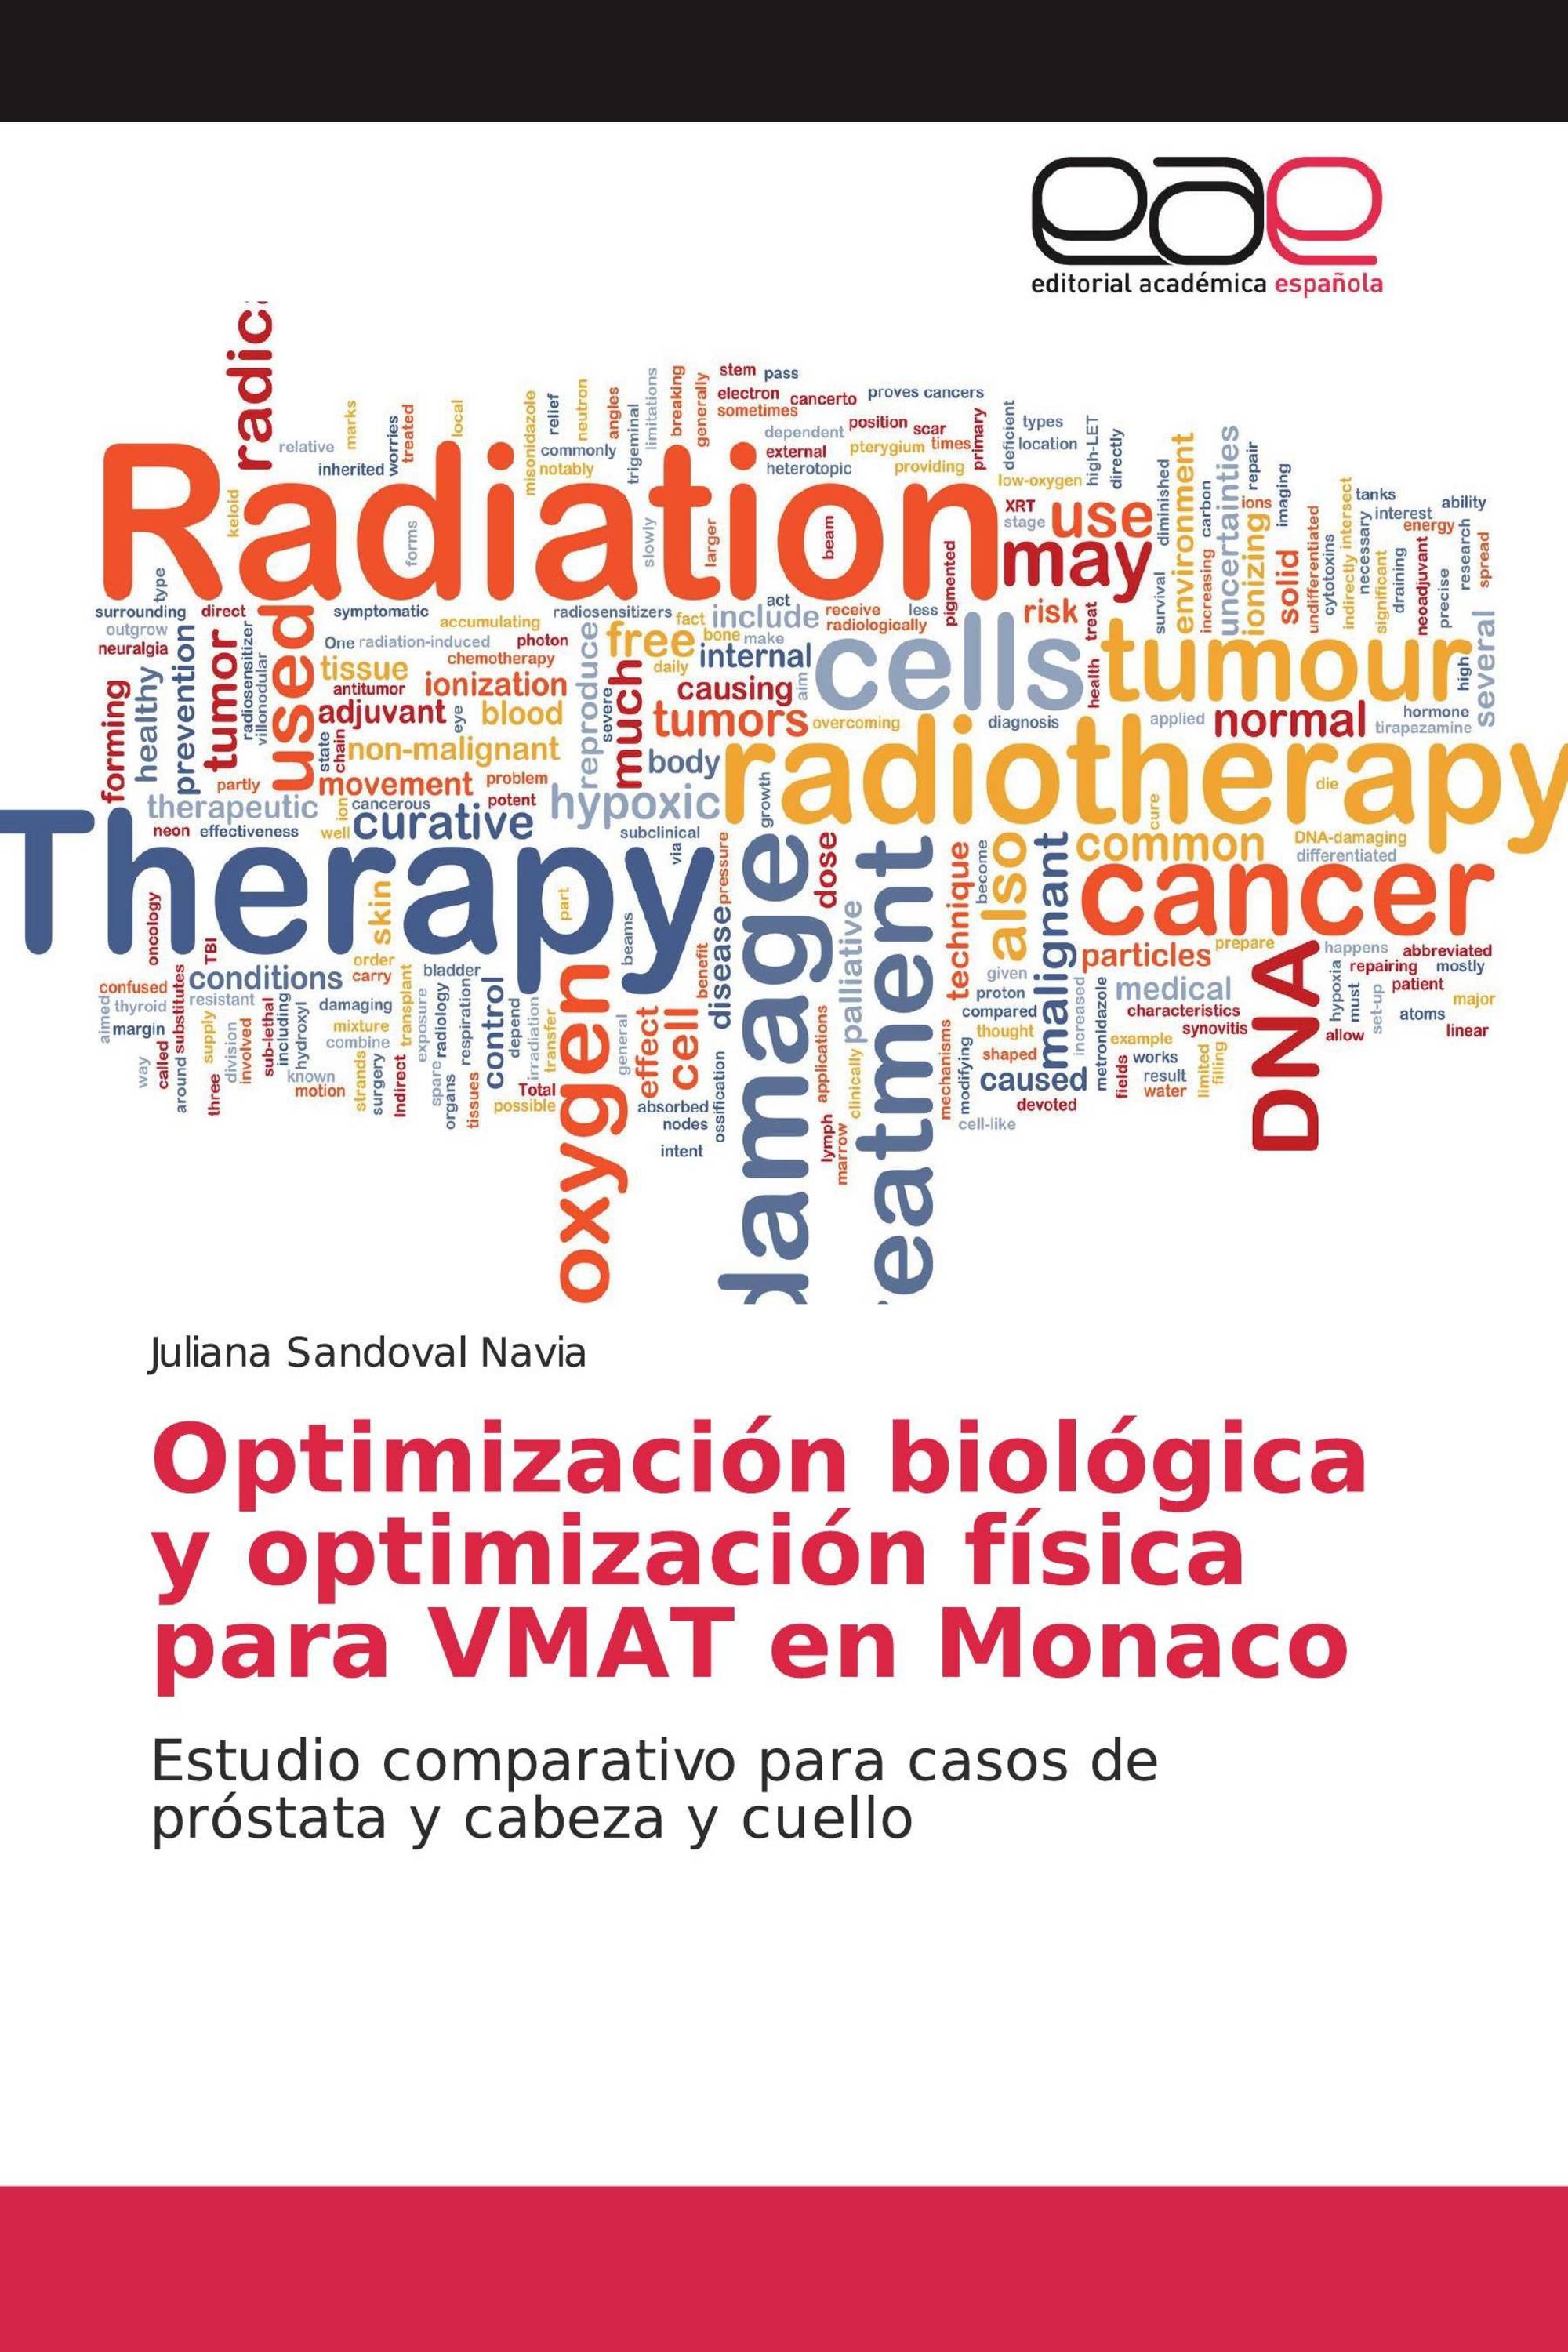 Optimización biológica y optimización física para VMAT en Monaco